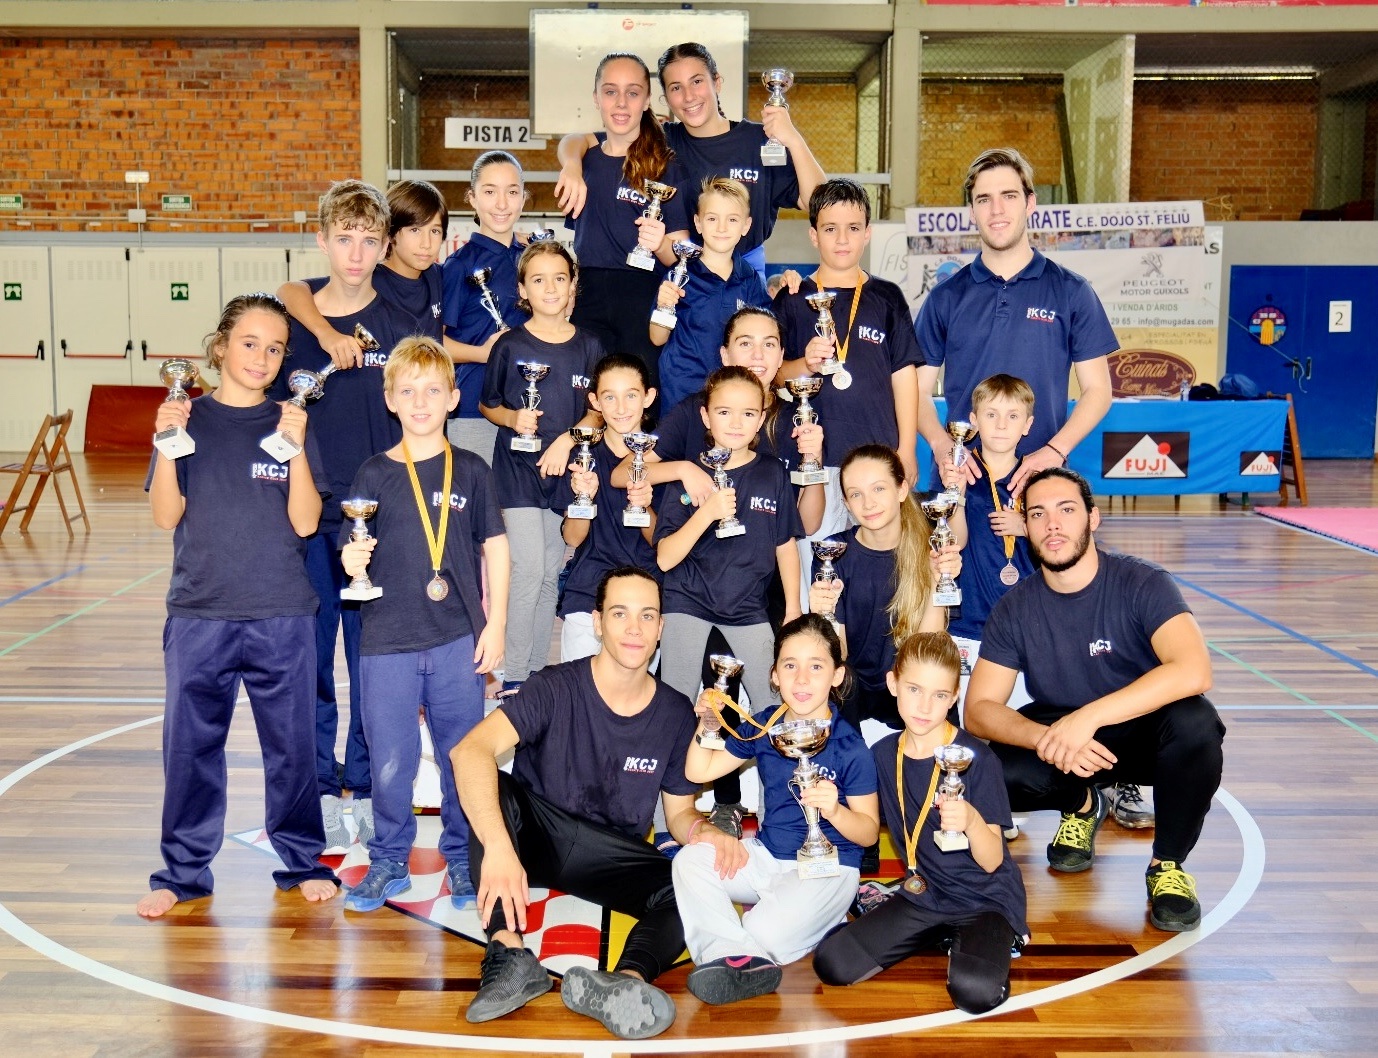 Ajuntament de Sant Celoni - El Karate Club Just aconsegueix 23 medalles